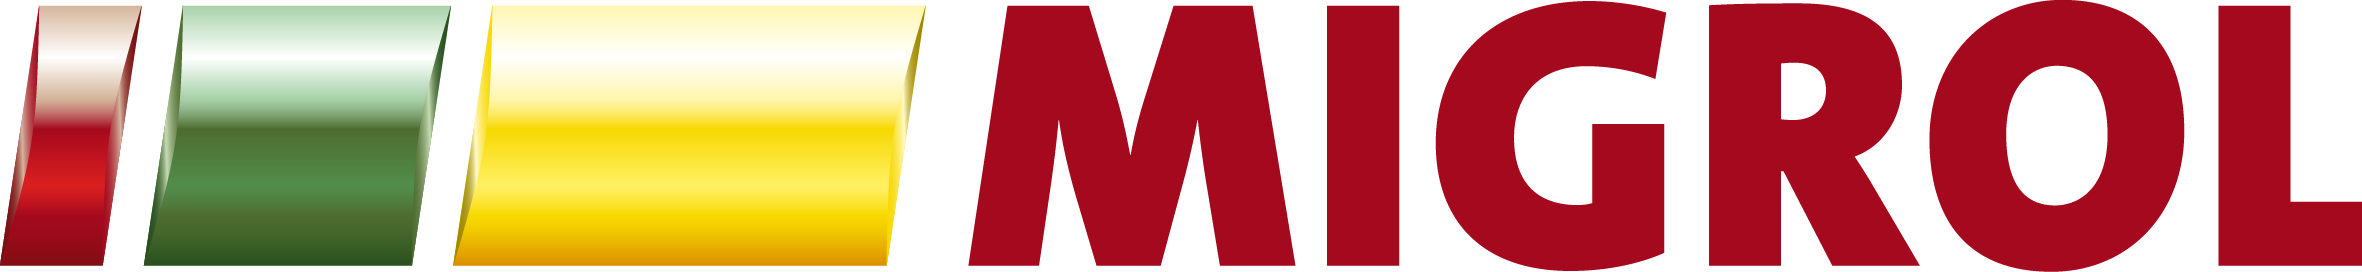 Migrol_Logo_Coated